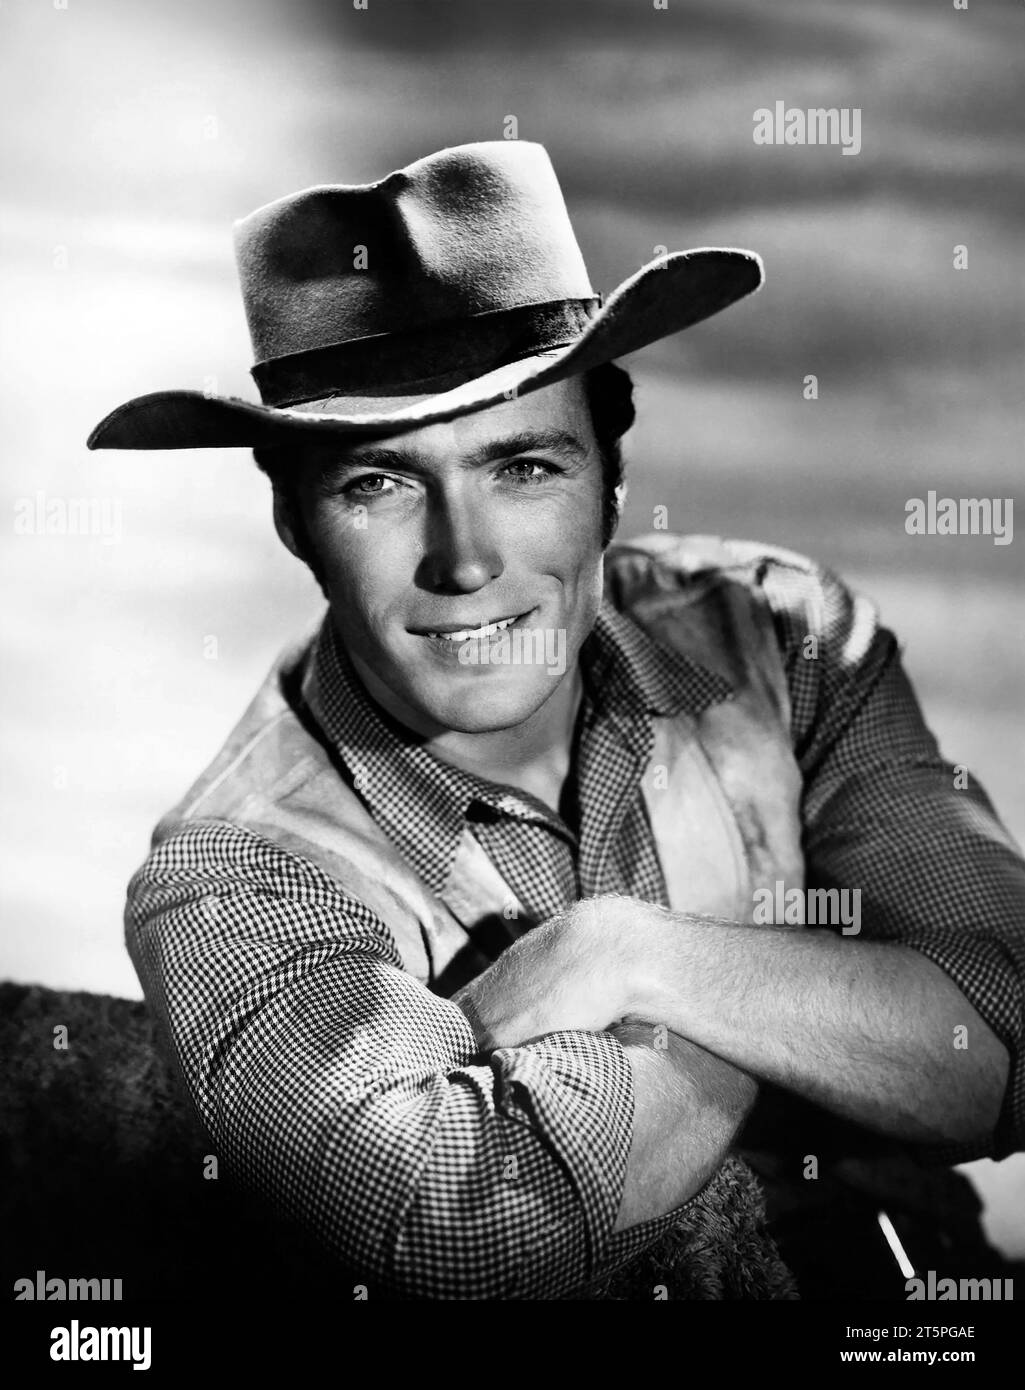 Clint Eastwood. Portait dell'attore e regista americano, Clinton Eastwood Jr. (Nato nel 1930), pubblicità ancora per la serie TV cowboy, Rawhide, 1961 Foto Stock